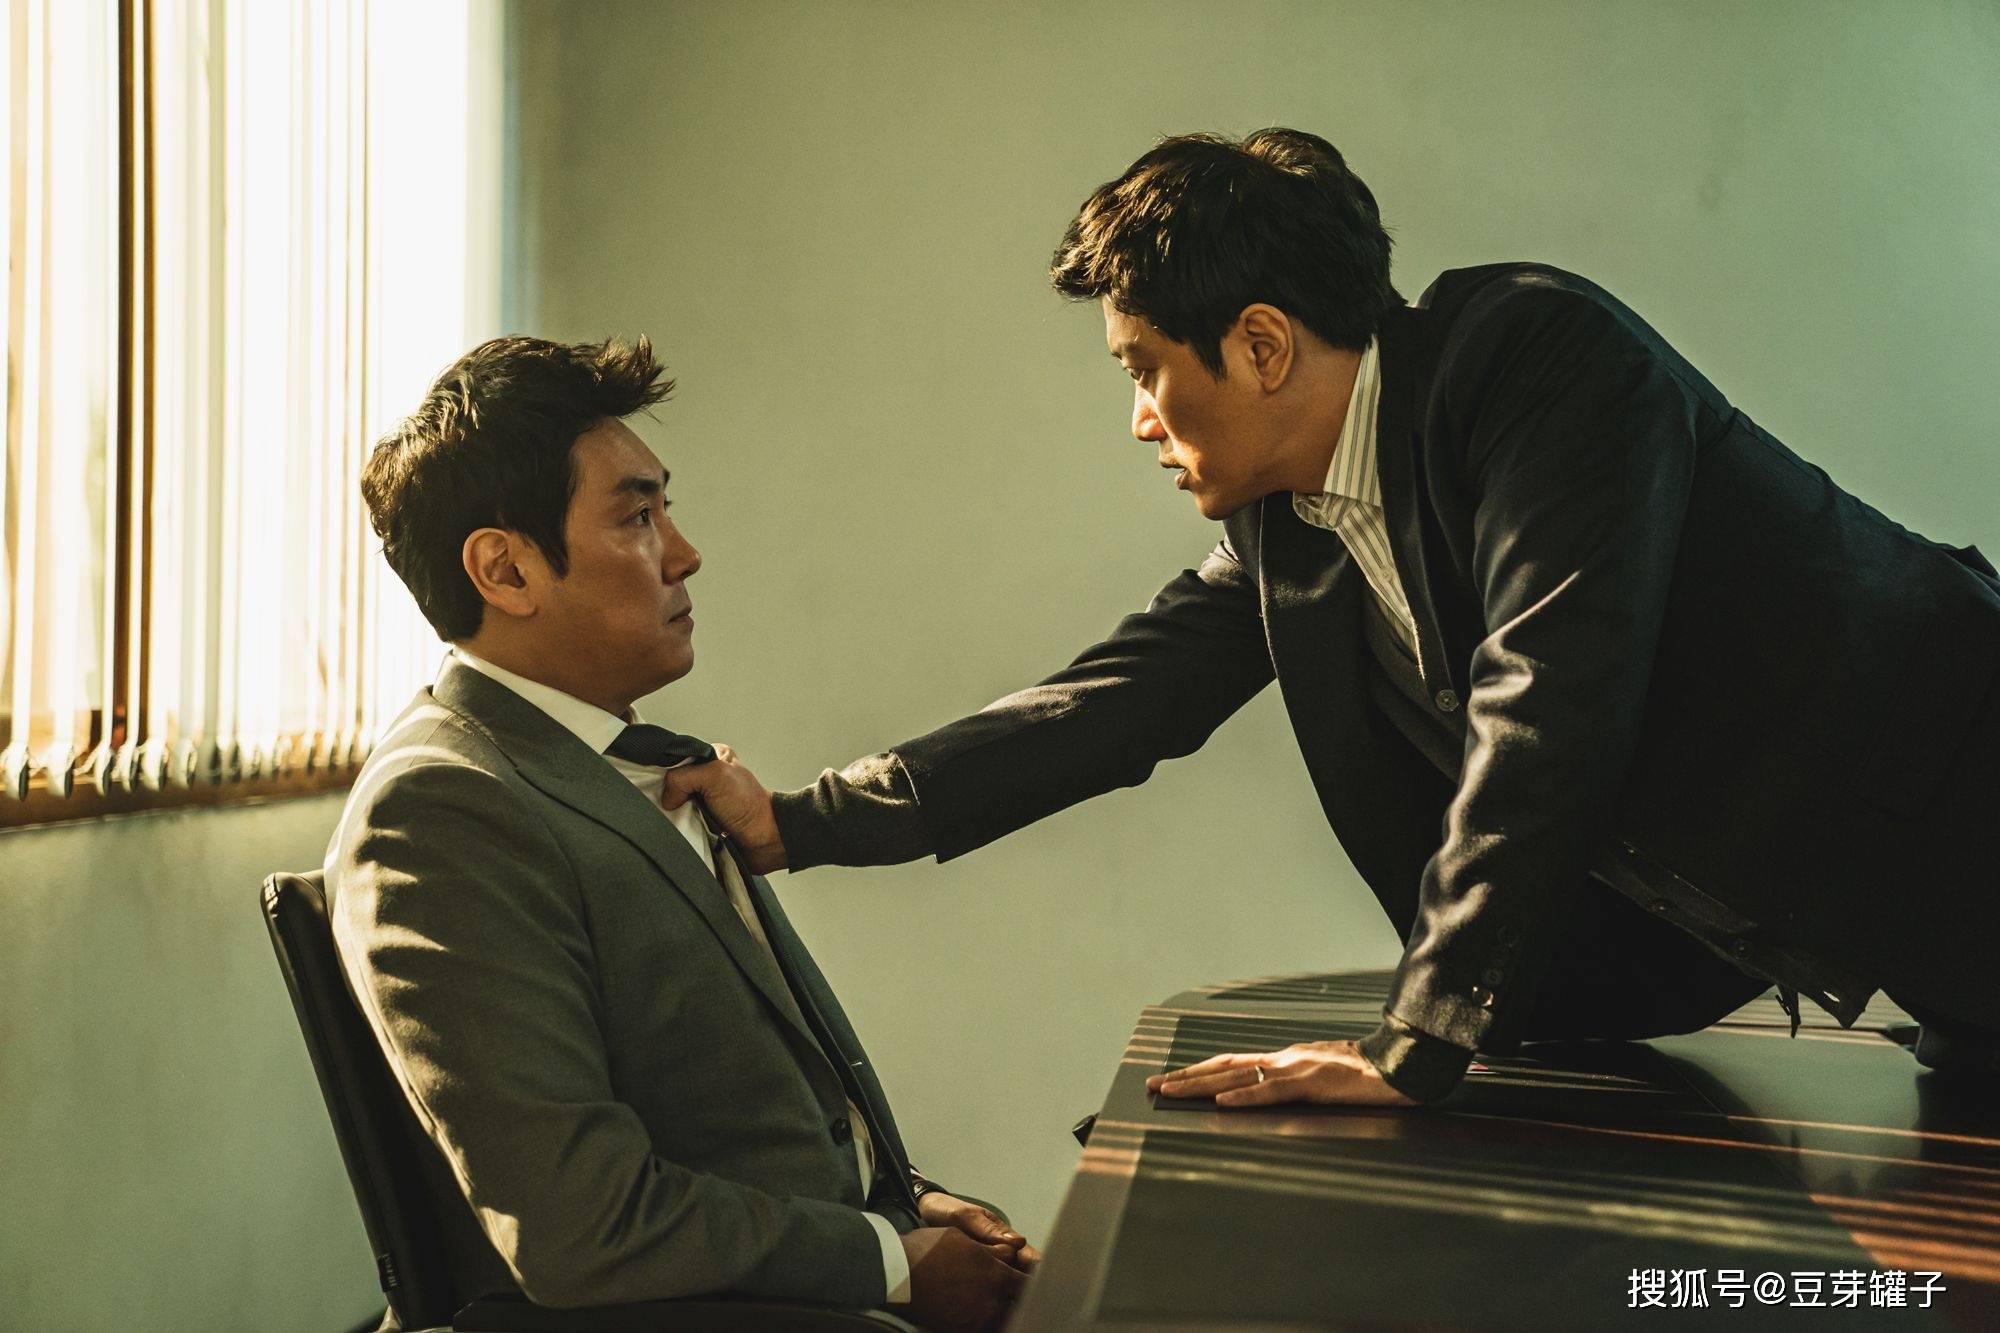 警官之血:韩国犯罪悬疑电影,赵震雄,崔宇植双雄对决,结局反转